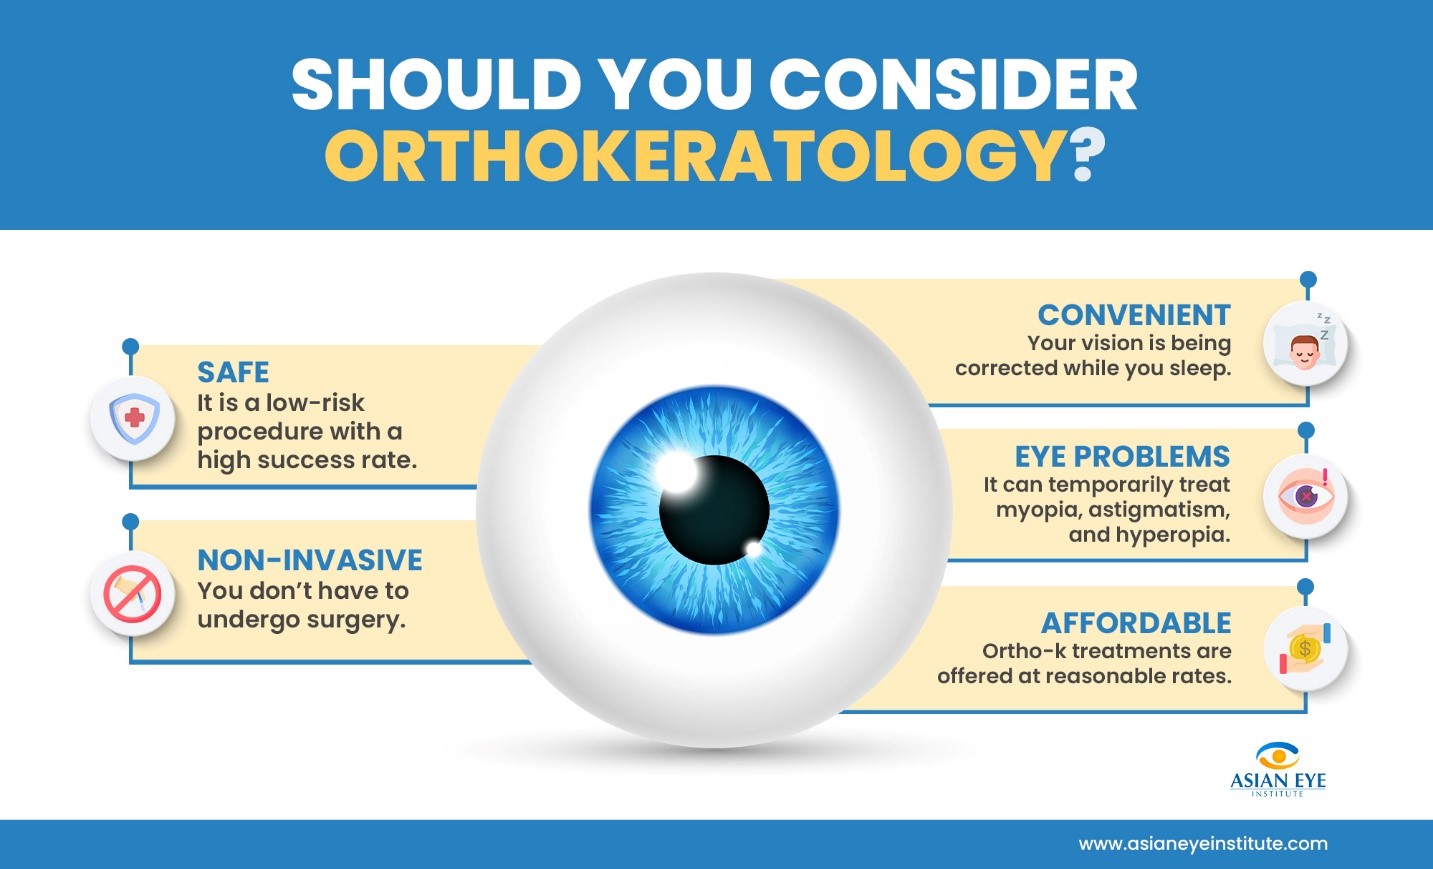 Should You Consider Orthokeratology?